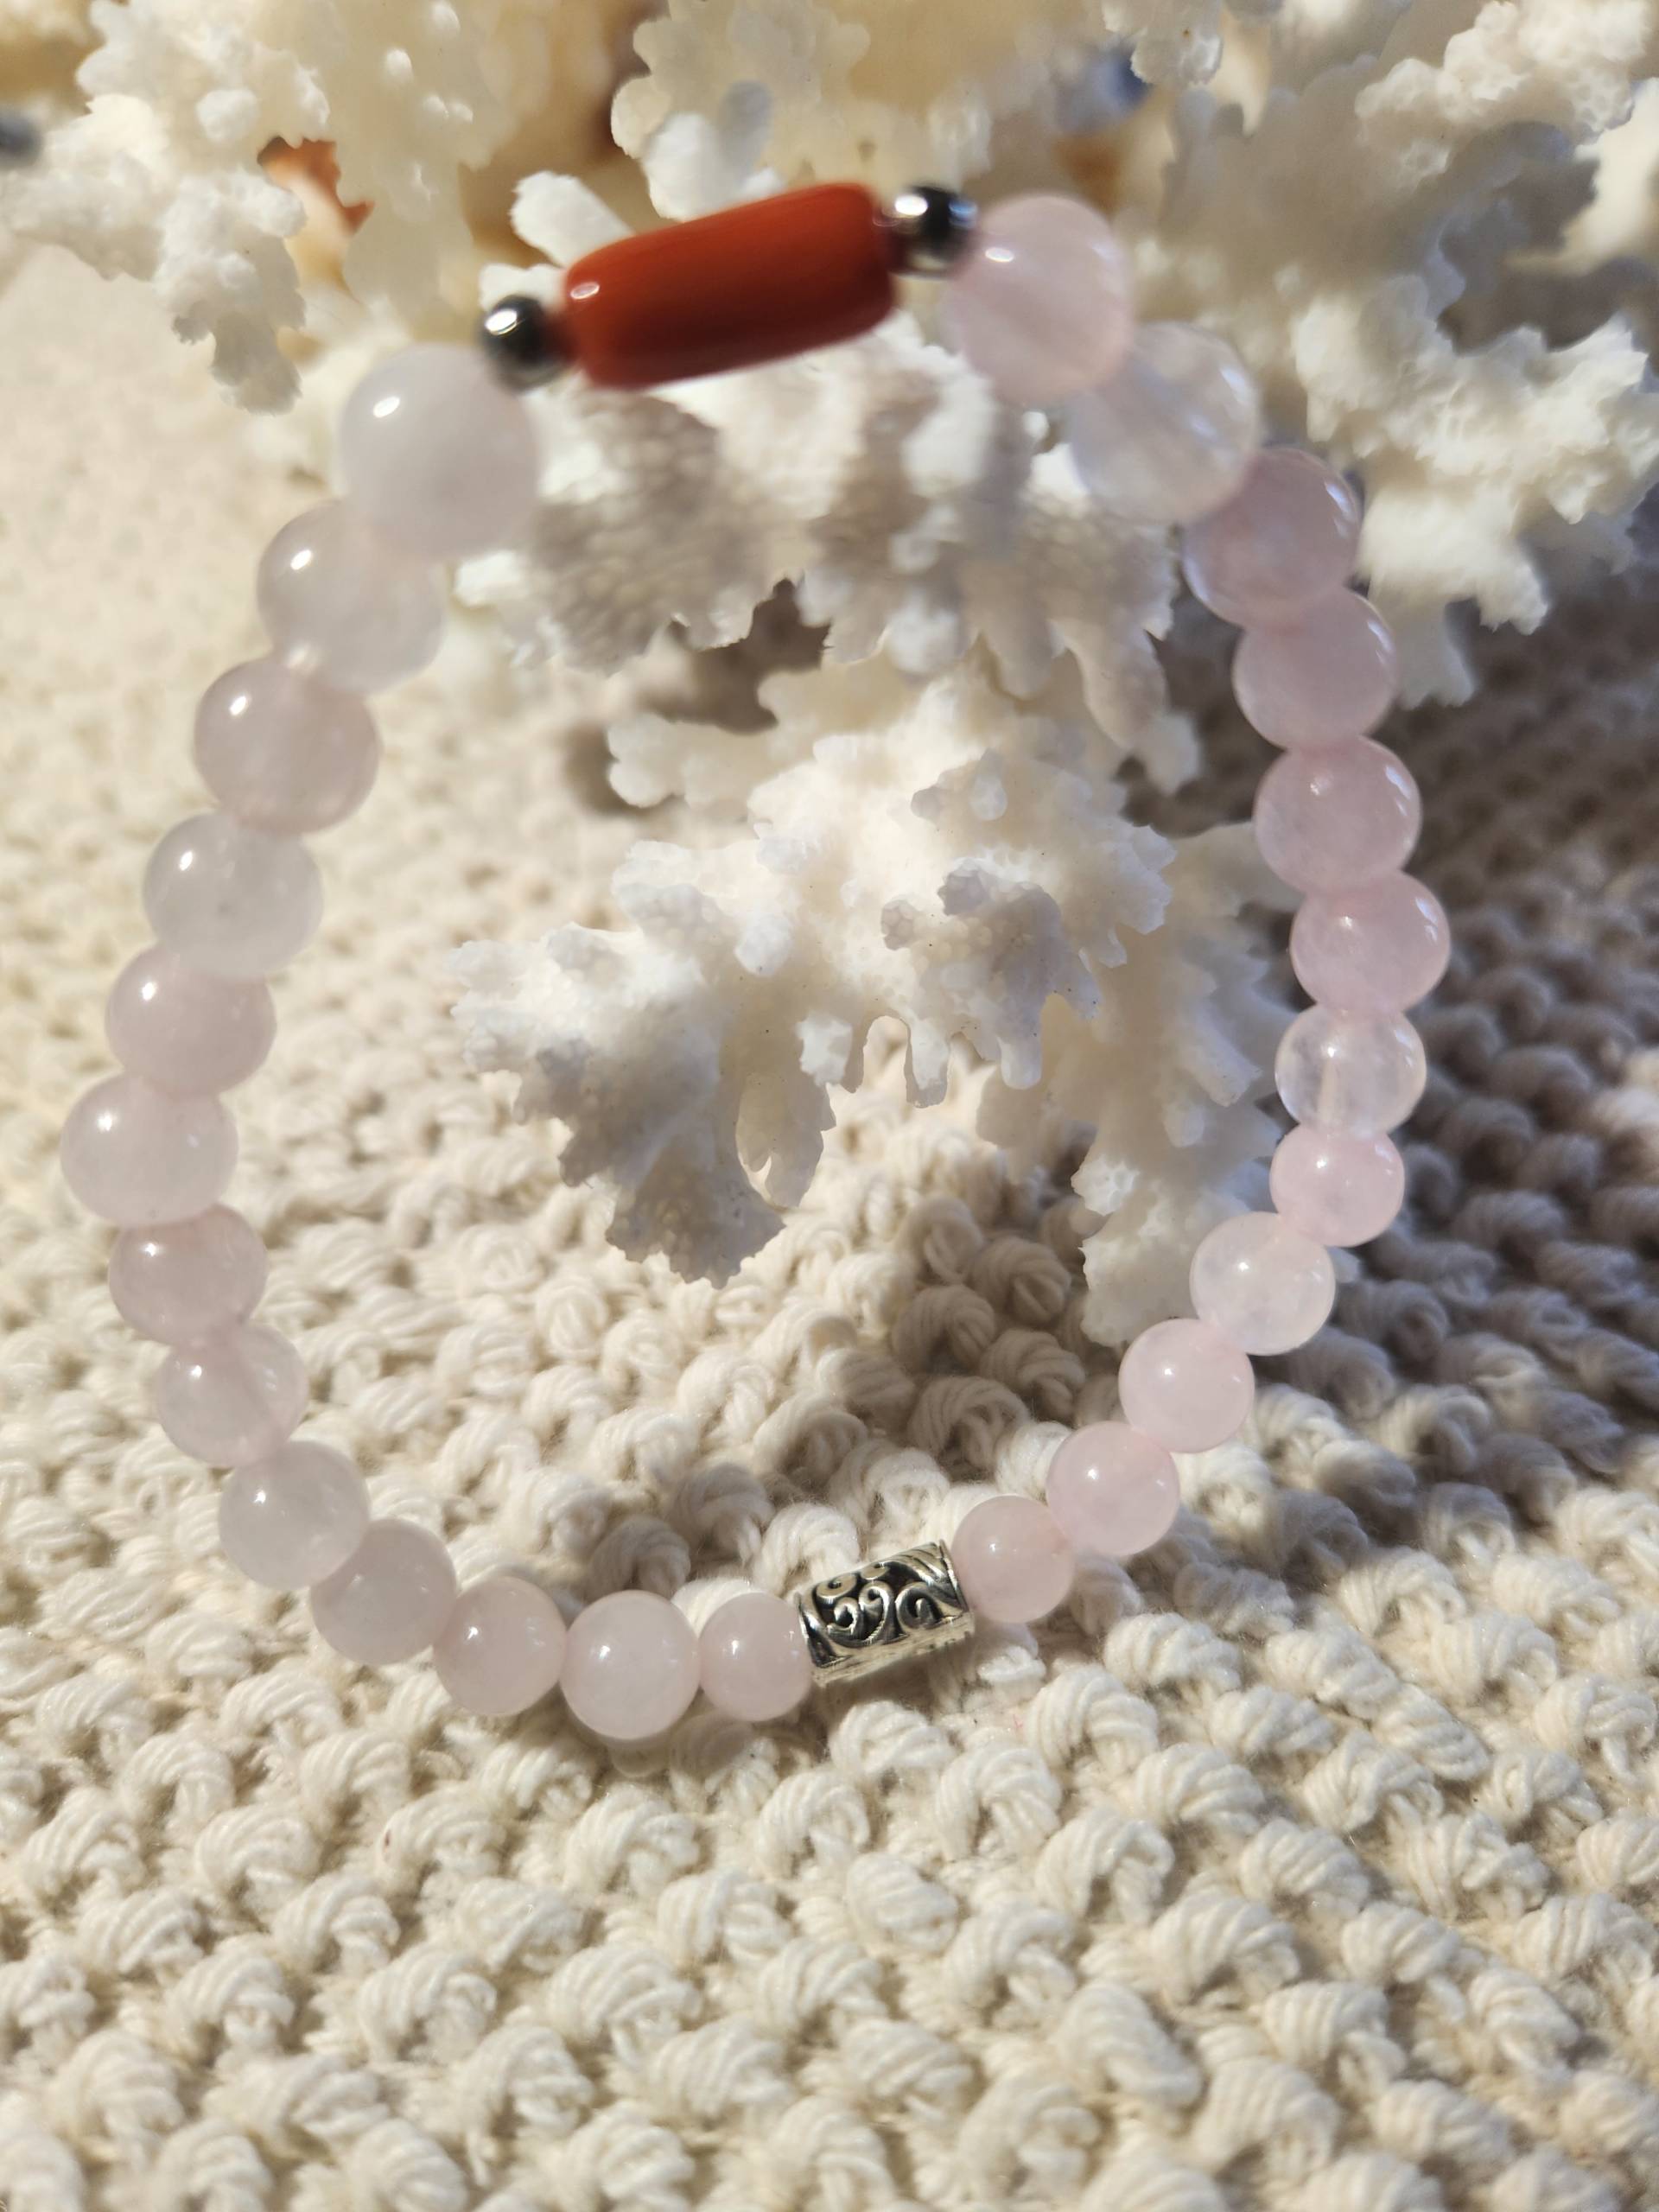 Bracelet pierre naturelle - quartz rose